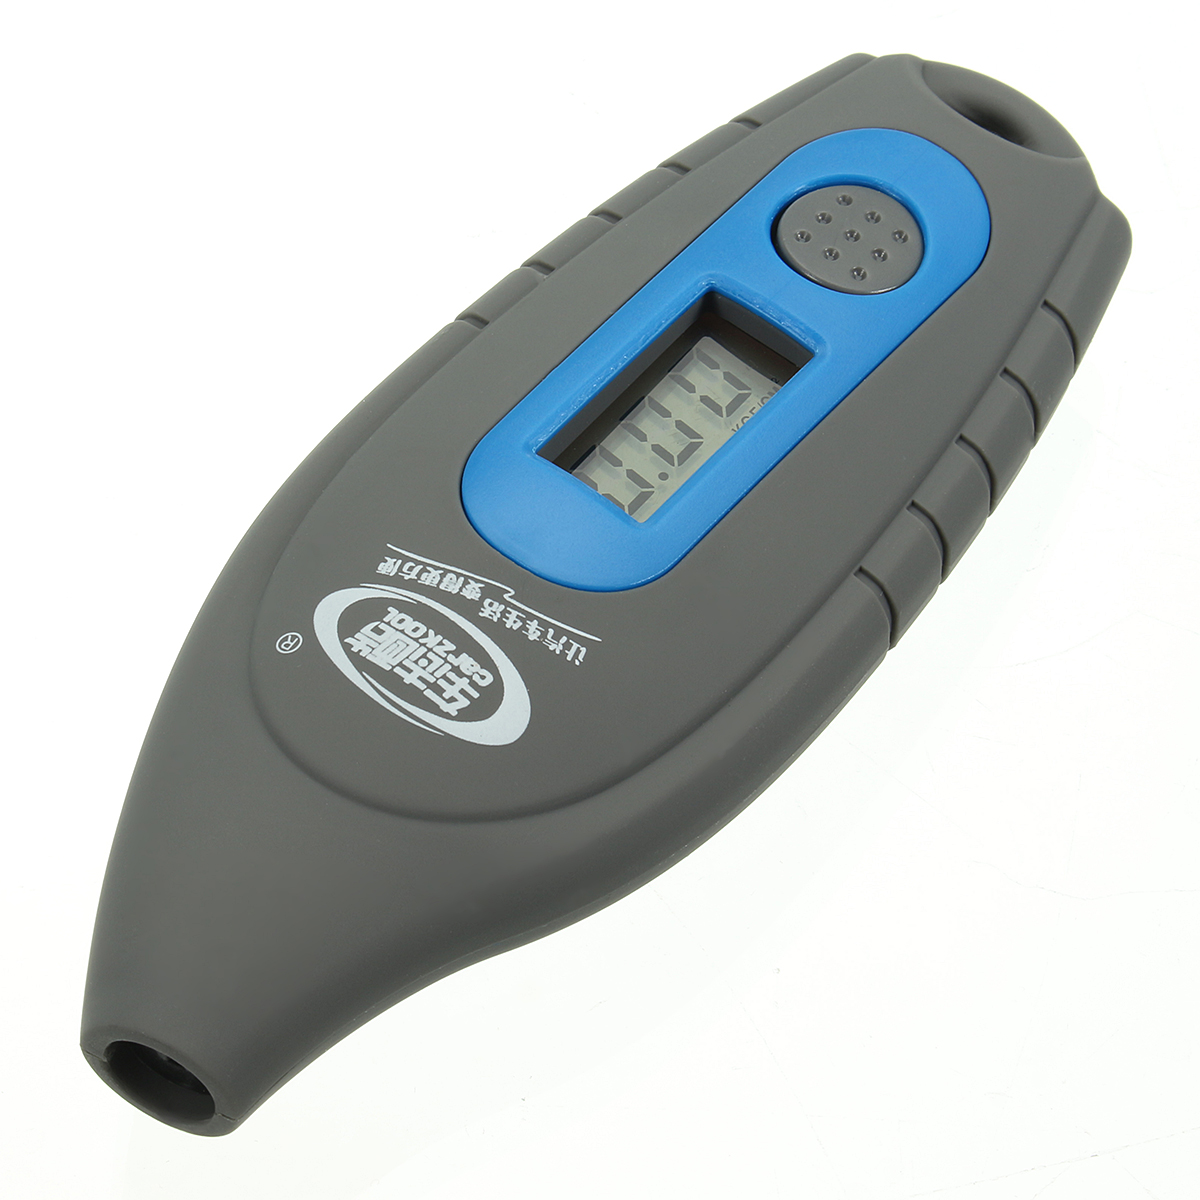 Car-Digital-Tire-Pressure-Gauge-LCD-PSI-KPA-BAR-Manometer-Electronic-Tyre-Tester-Diagnostic-Tools-1205344